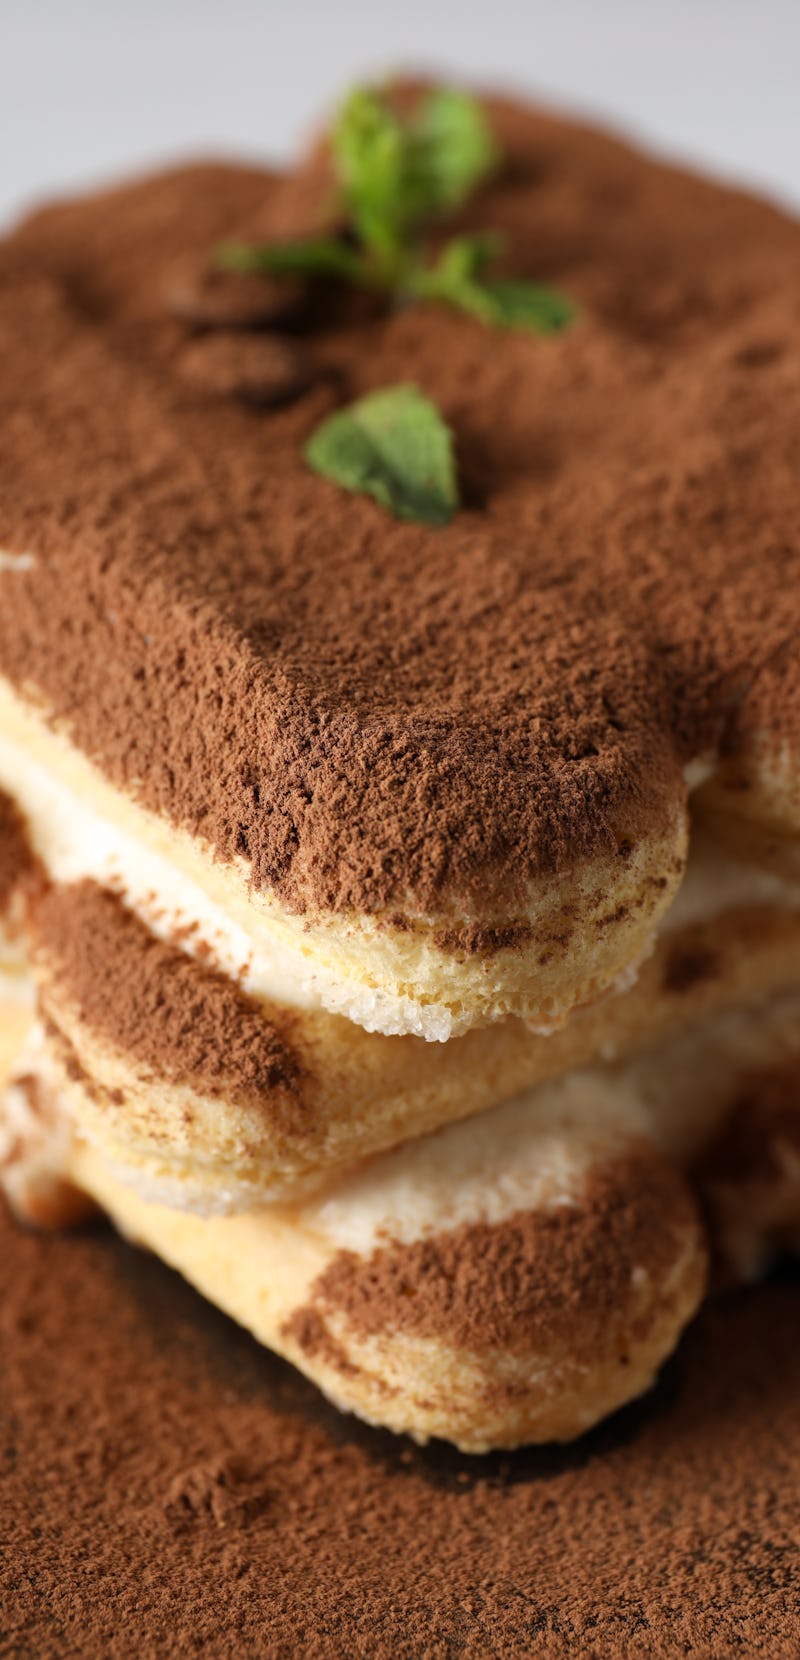 Concept of sweet food, Tiramisu cake, close up